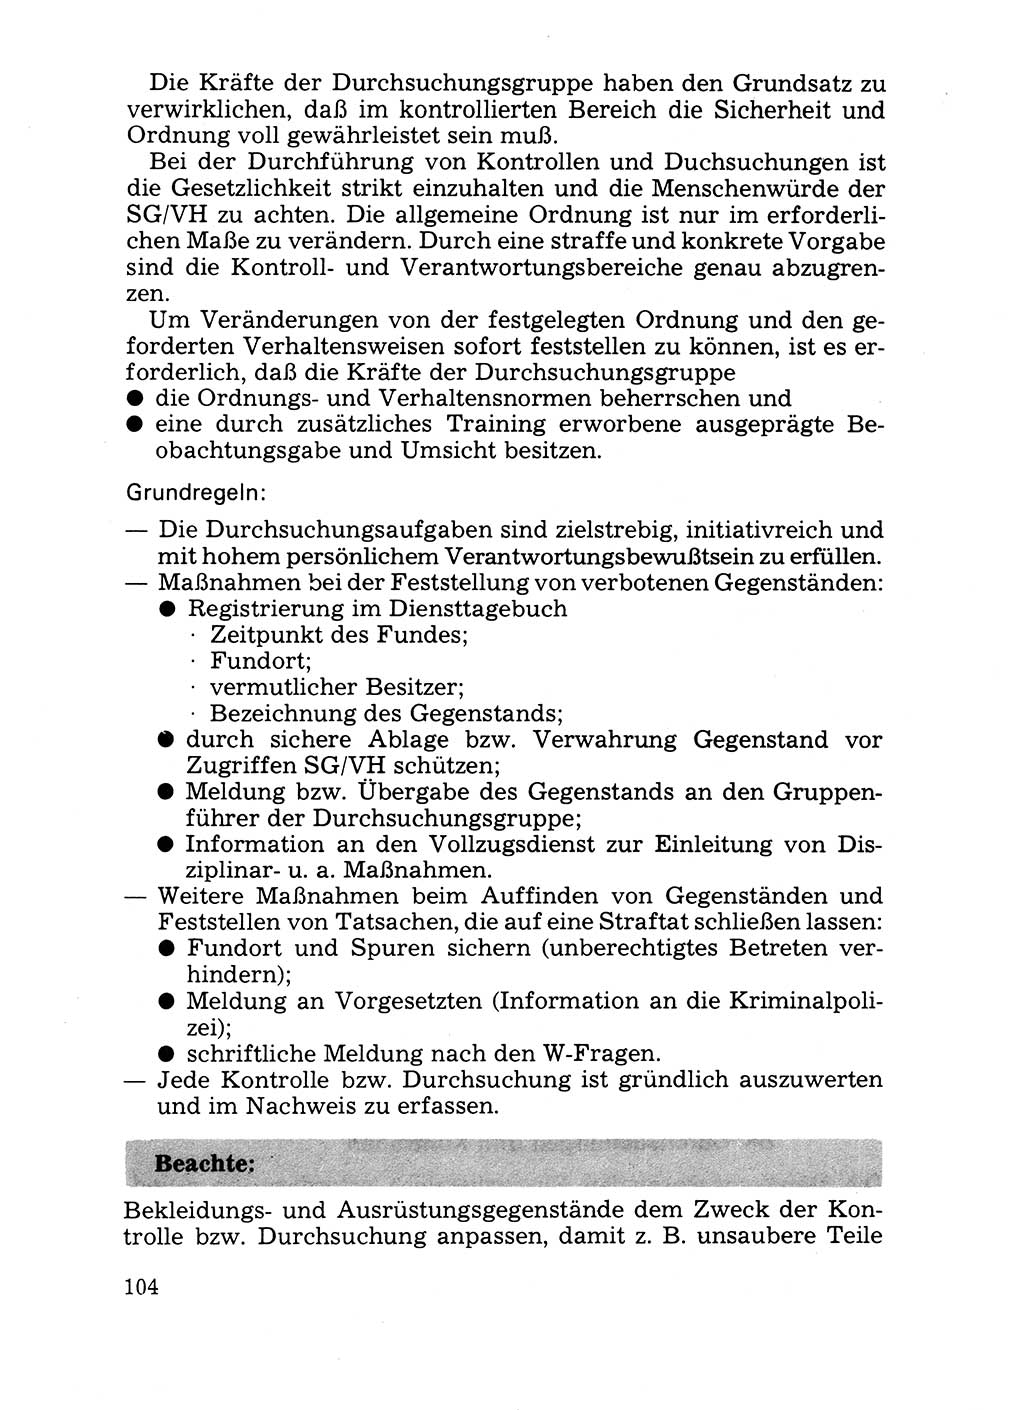 Handbuch für operative Dienste, Abteilung Strafvollzug (SV) [Ministerium des Innern (MdI) Deutsche Demokratische Republik (DDR)] 1981, Seite 104 (Hb. op. D. Abt. SV MdI DDR 1981, S. 104)